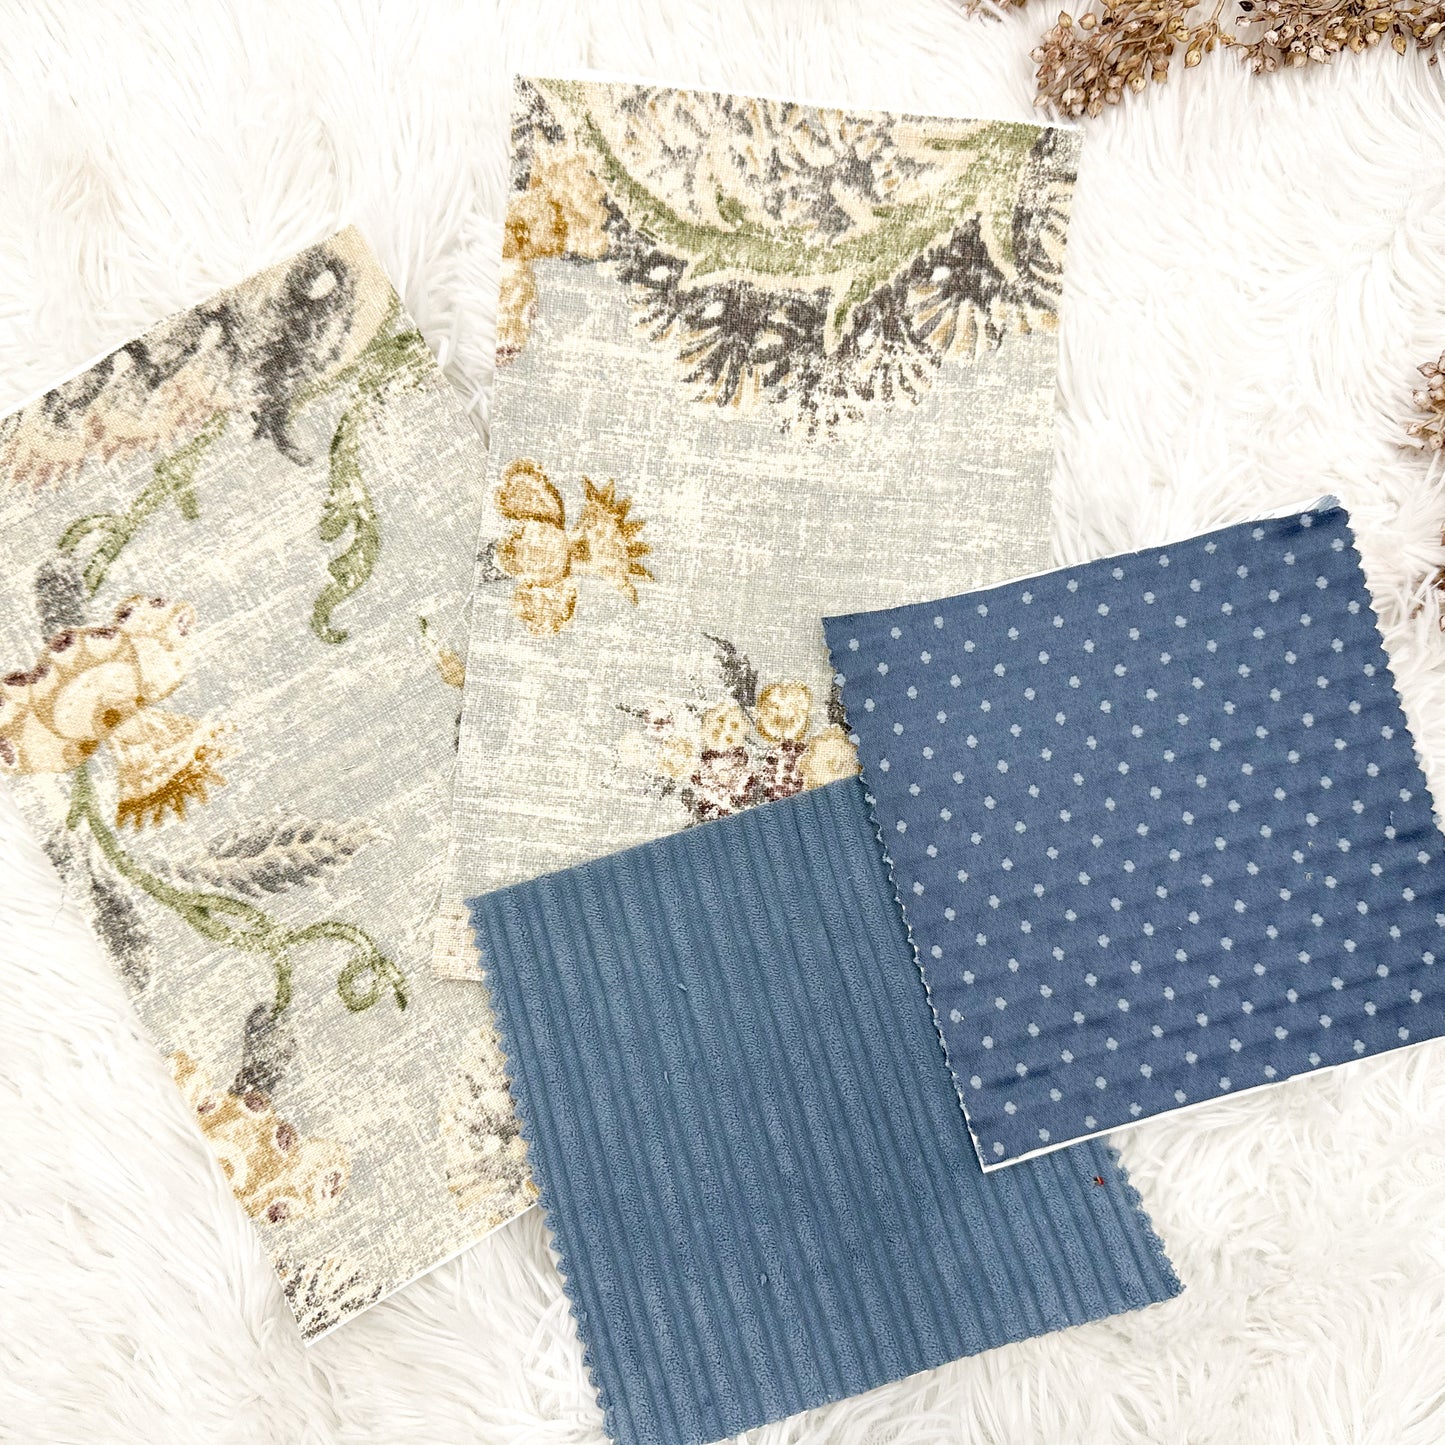 Adhesive Fabric Sheets (Set of 4)